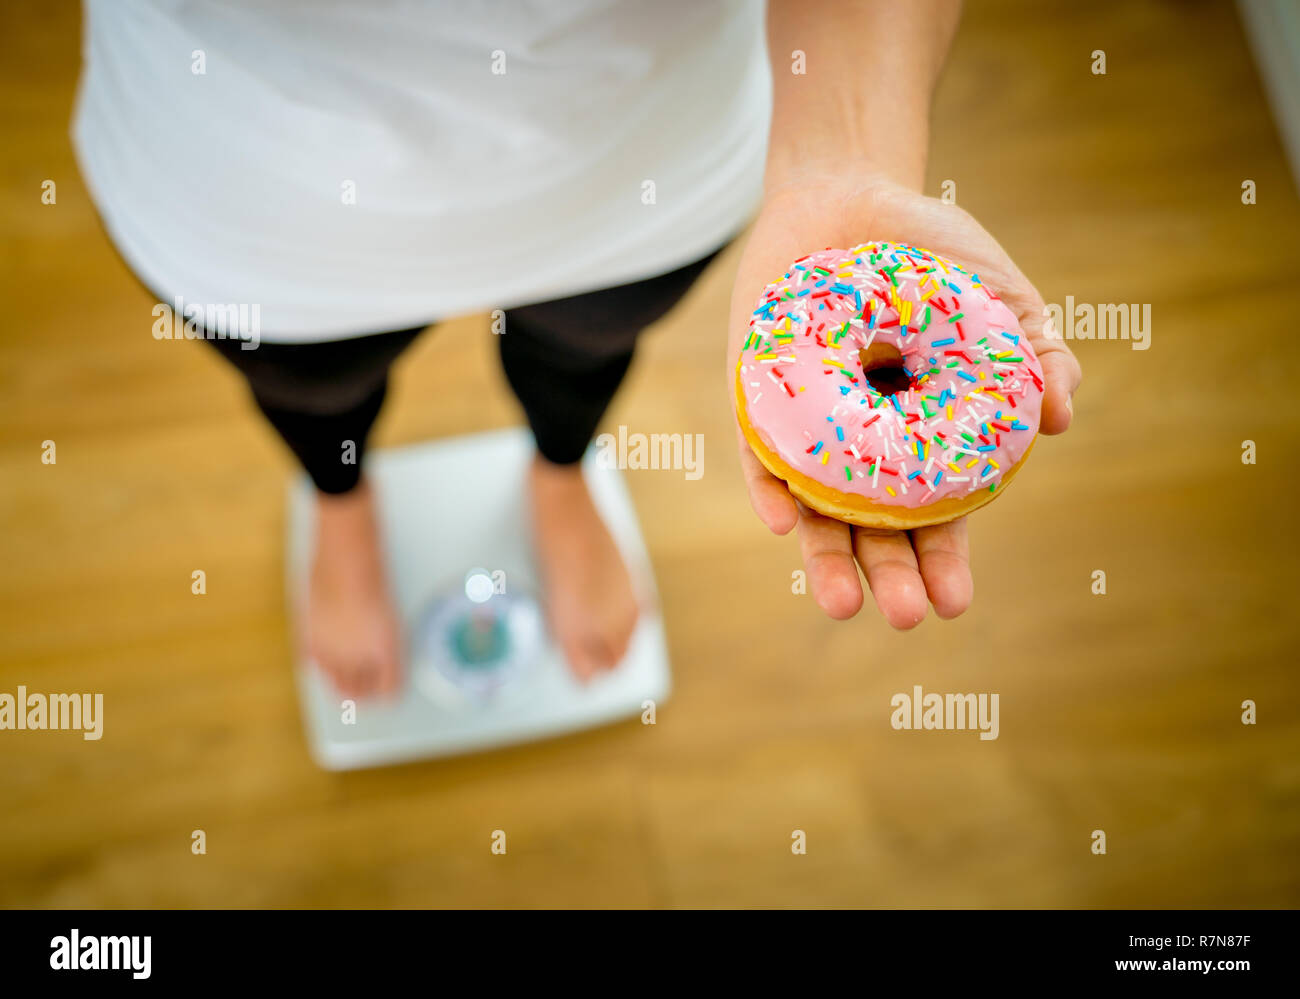 Nahaufnahme von Frau auf der Skala, in die Hände von Apple und Krapfen, die Wahl zwischen gesunden ungesunden essen Dessert während der Messung Körpergewicht in der Mutter Stockfoto